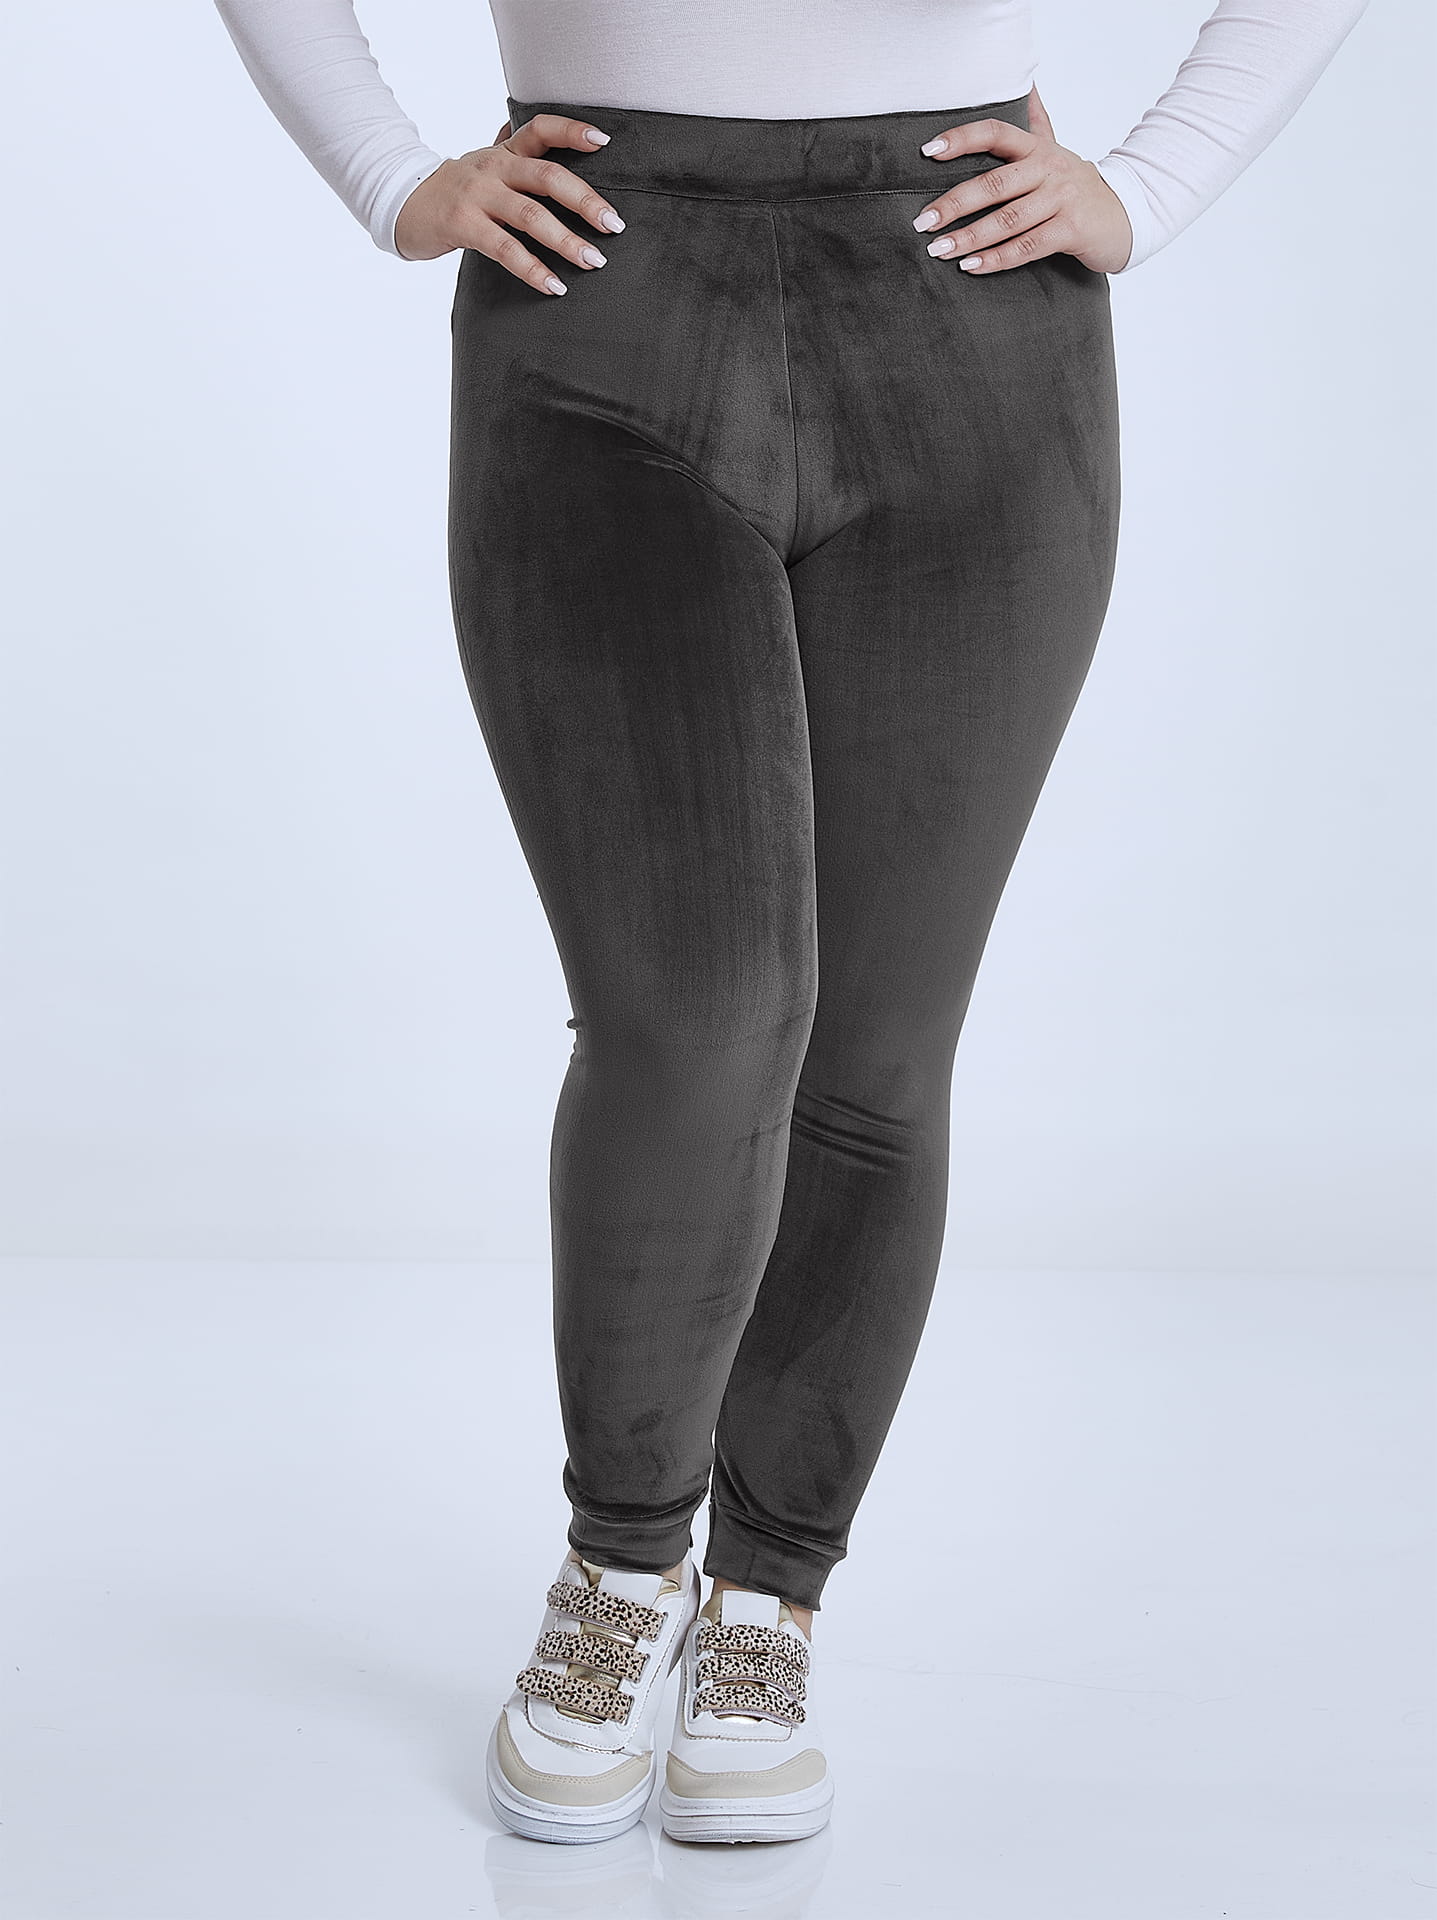 Velvet high waist leggings curvy in dark grey, 9.99€ | Celestino